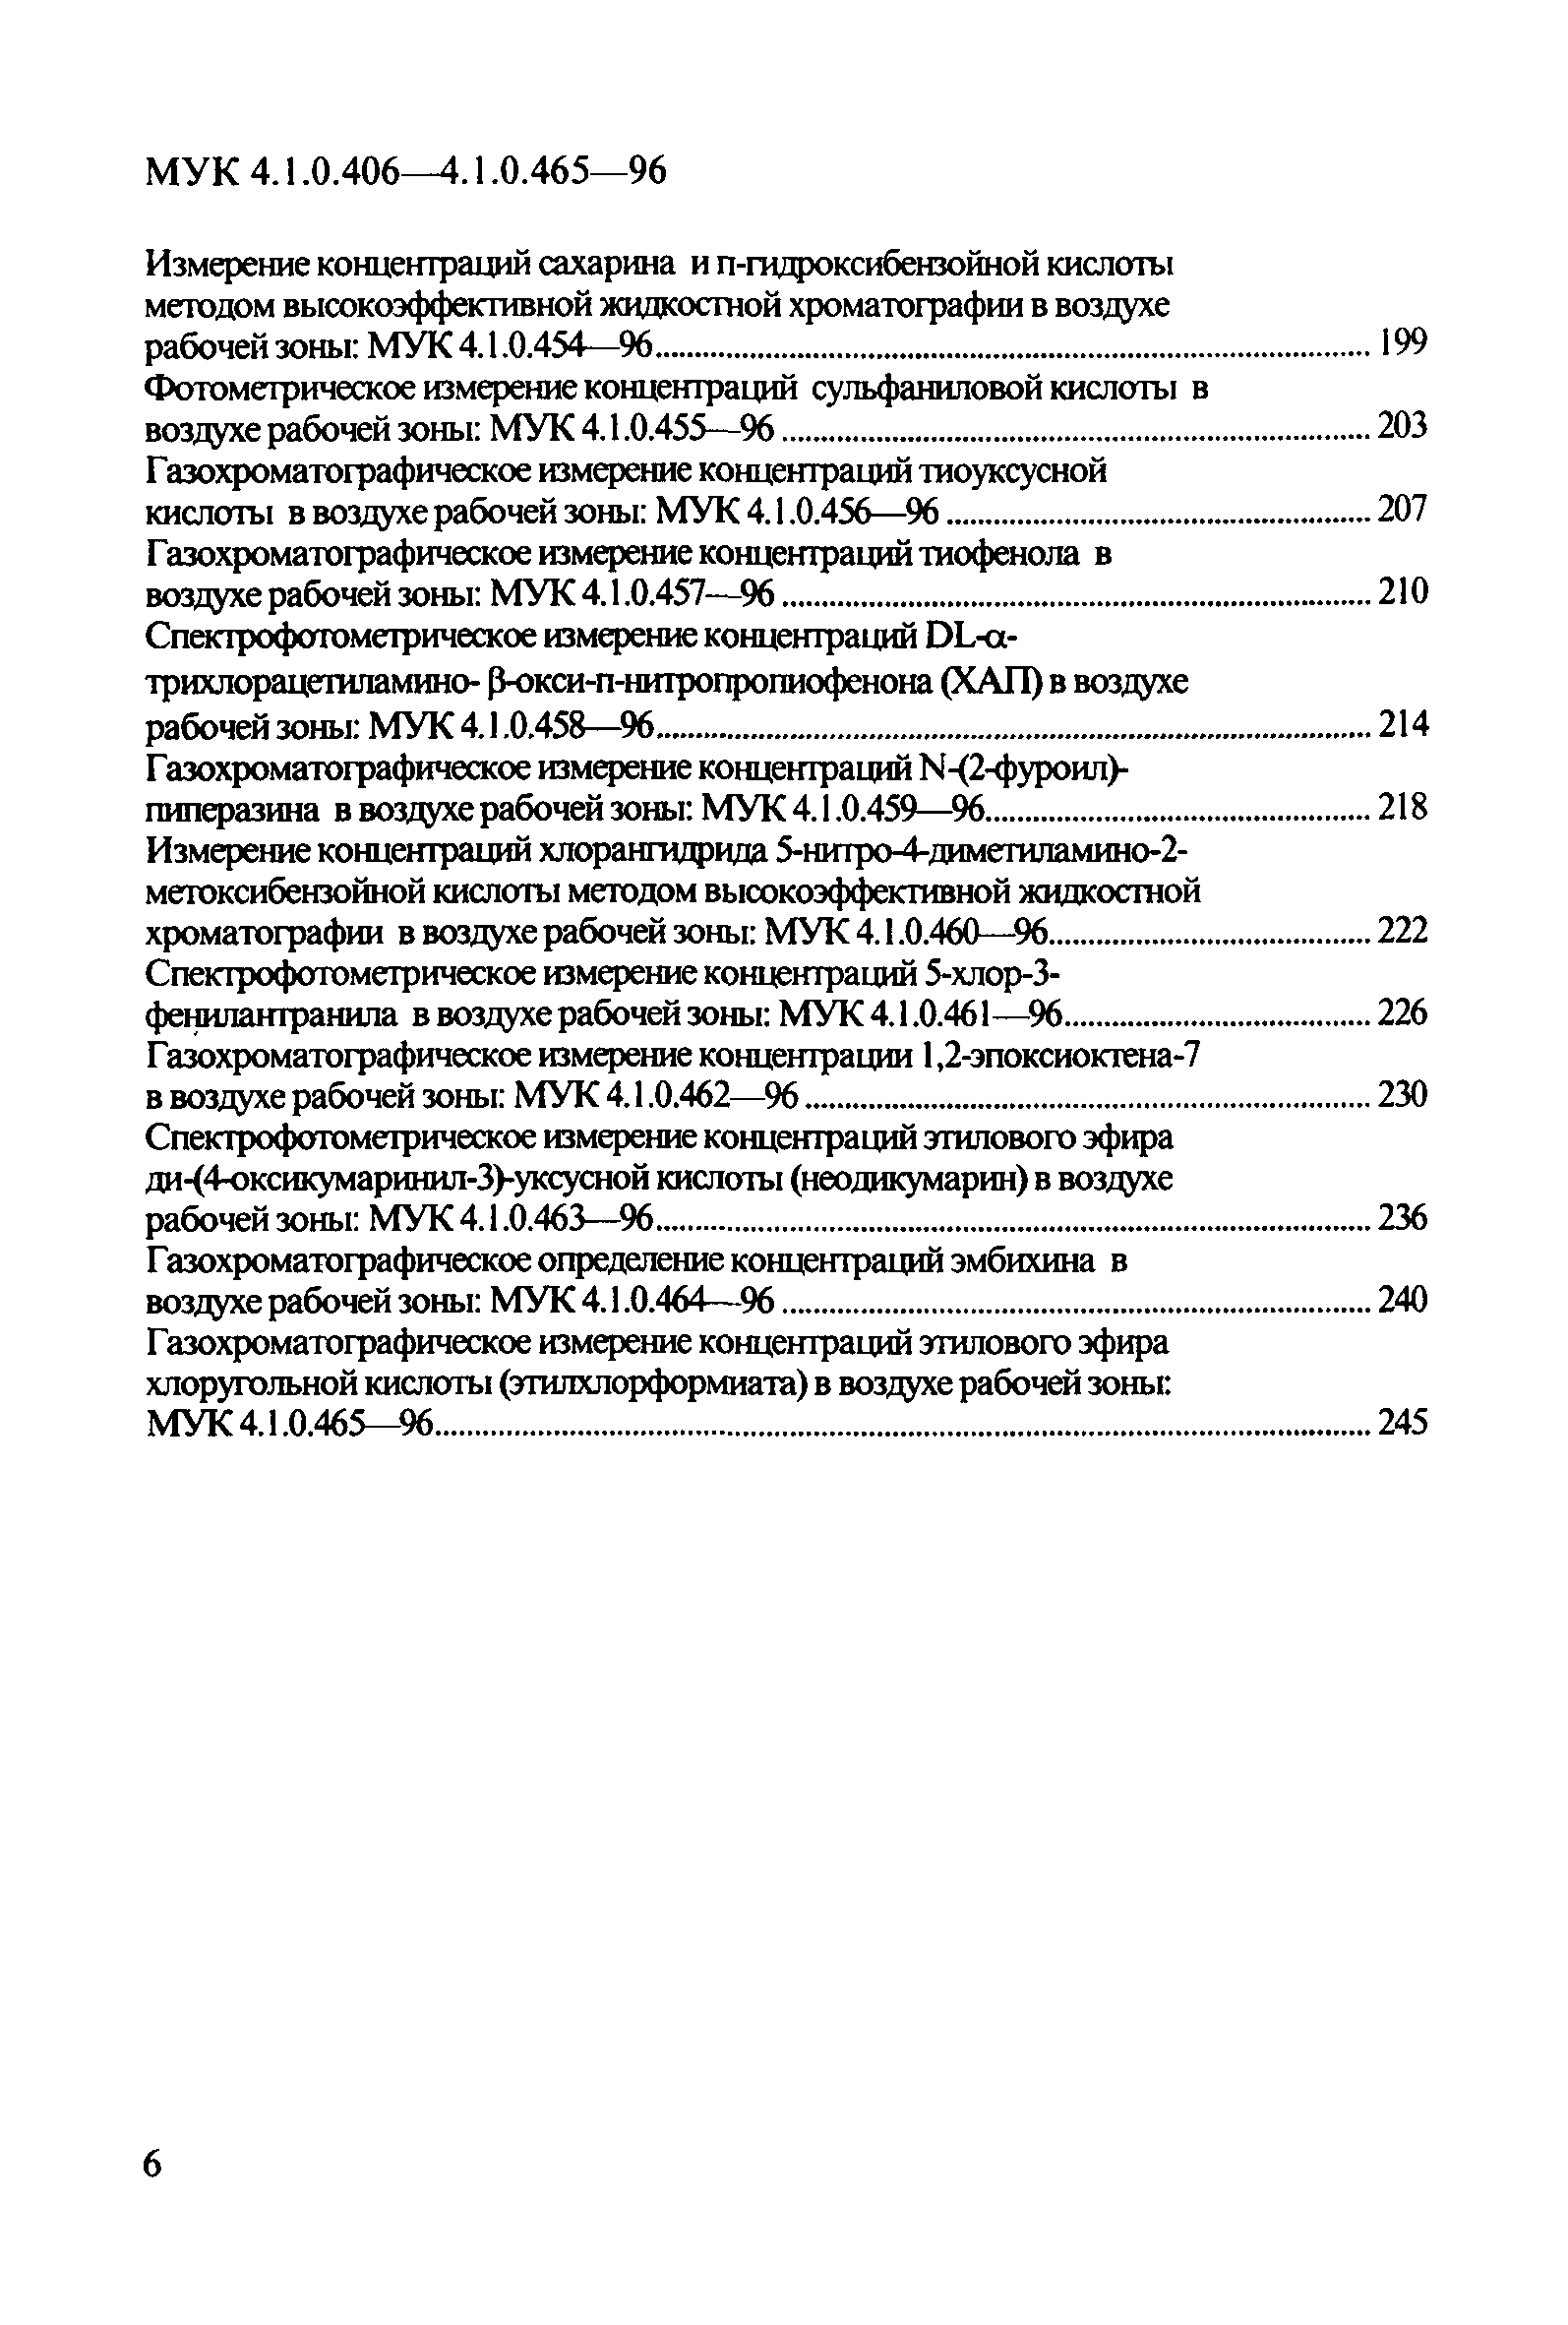 МУК 4.1.0.463-96